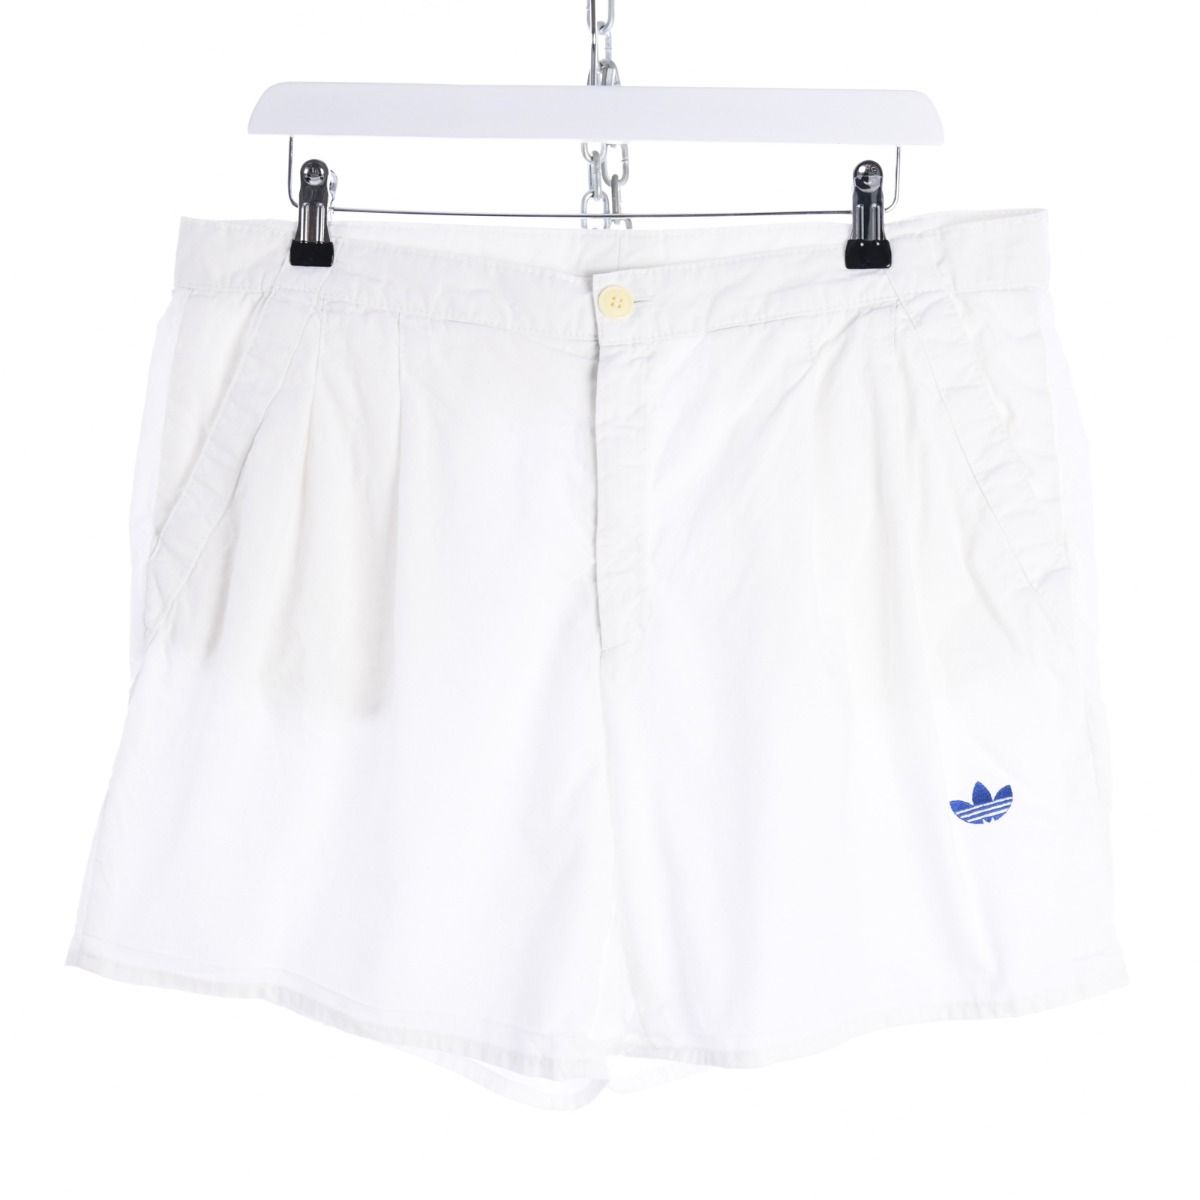 Adidas 1980s Shorts